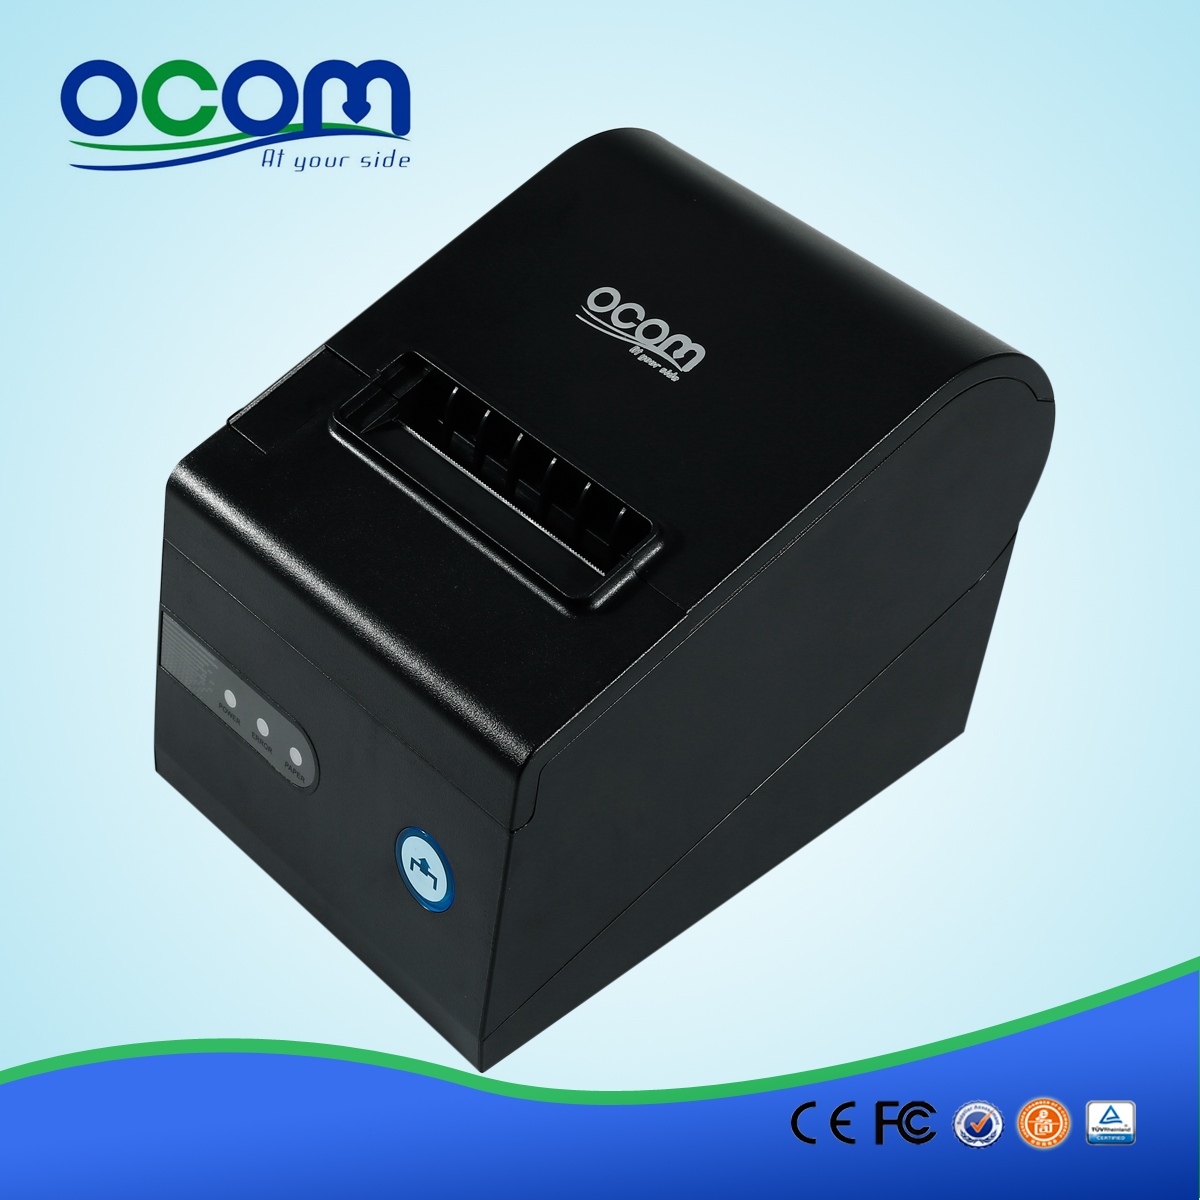 OCPP-804 سطح المكتب الحرارية استلام الطابعة مع USB المنفذ المتوازي المسلسل